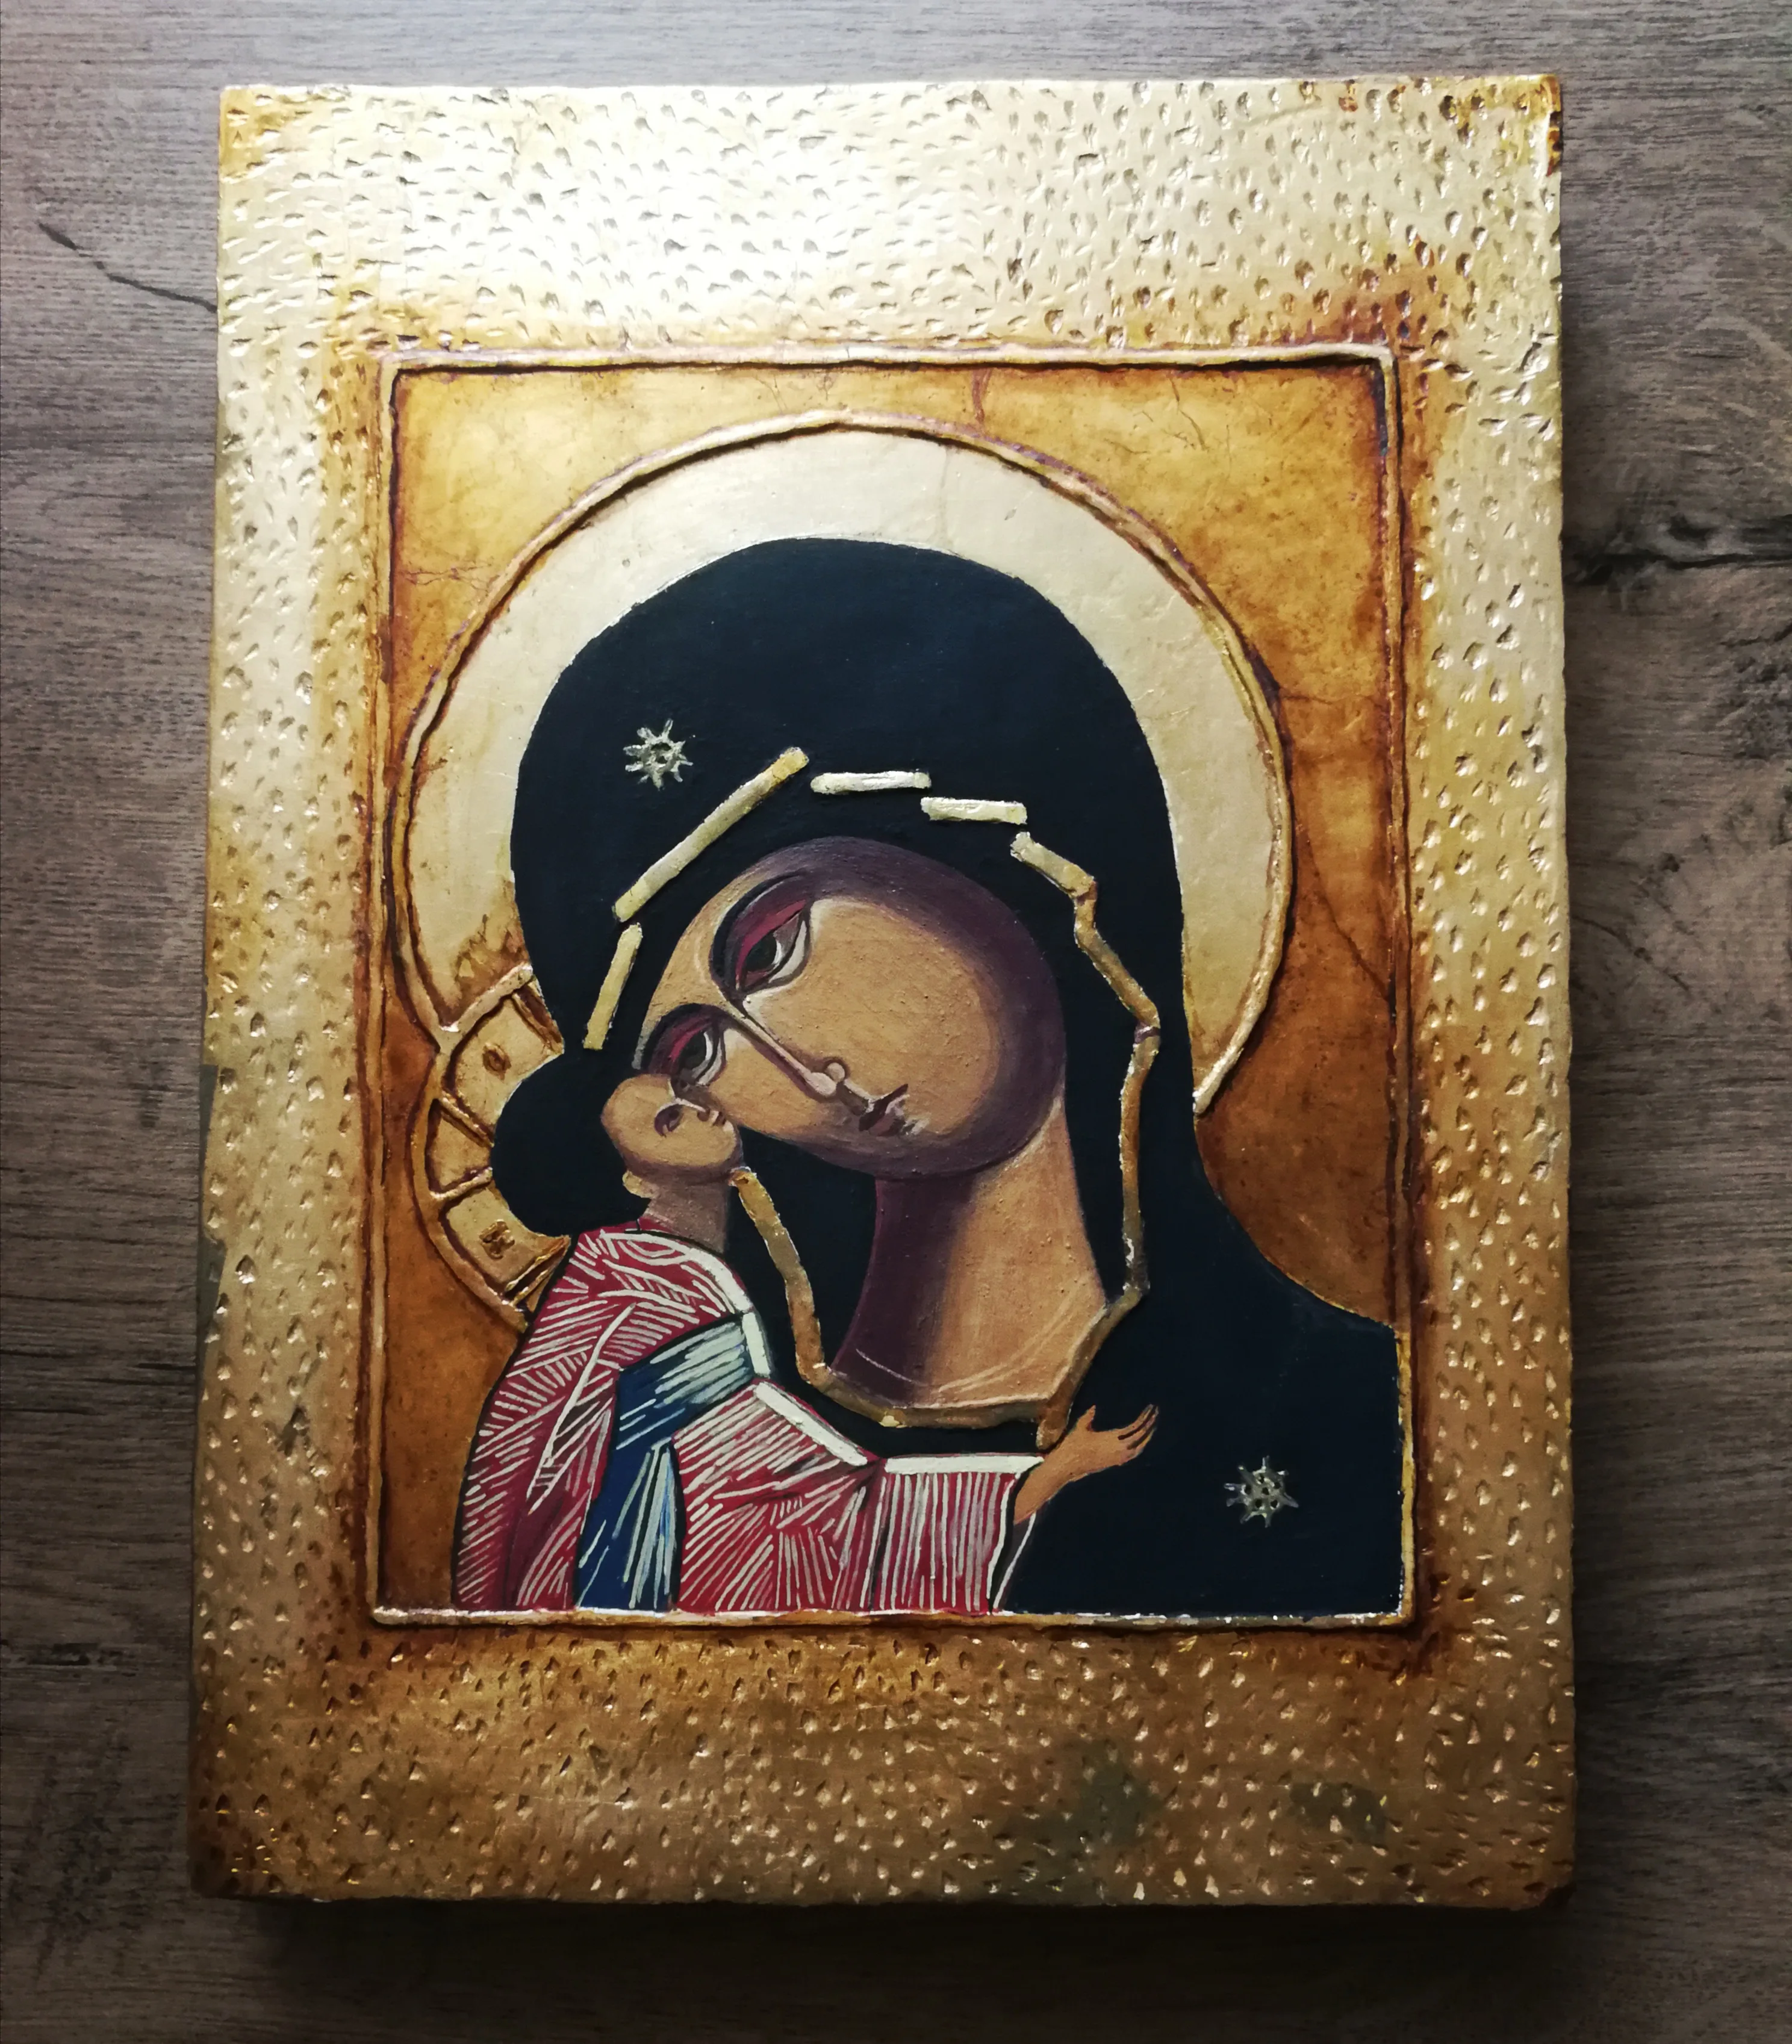 Ikona Matki Boskiej z Dzieciątkiem, o rozmiarach 33x25 cm, złocona i wykonana temperą na desce